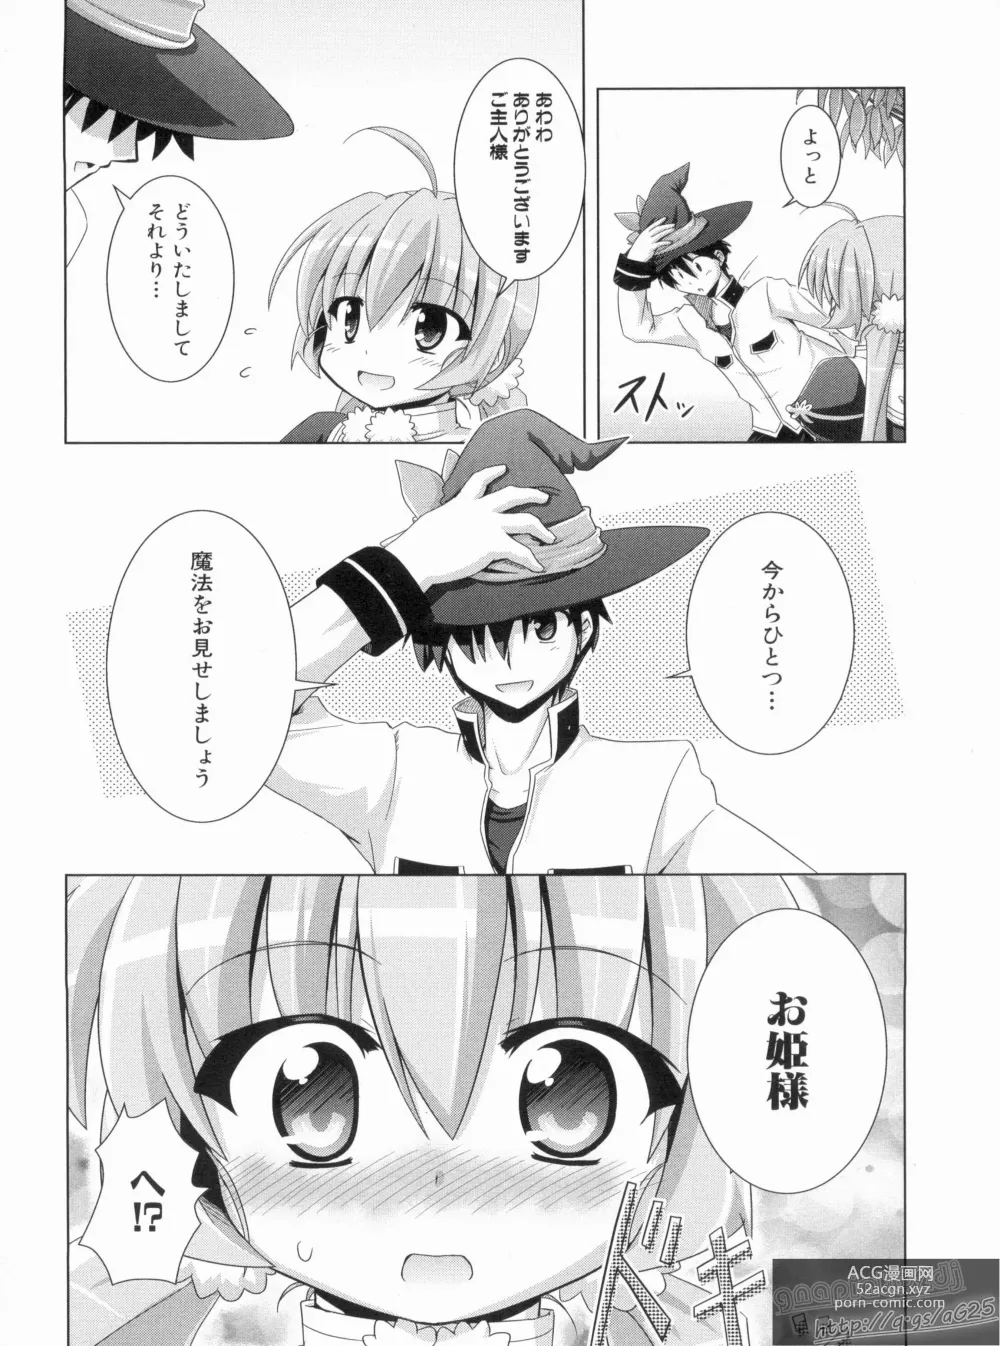 Page 148 of manga Shin Koihime Musou Gaishi Saiten VOL.2